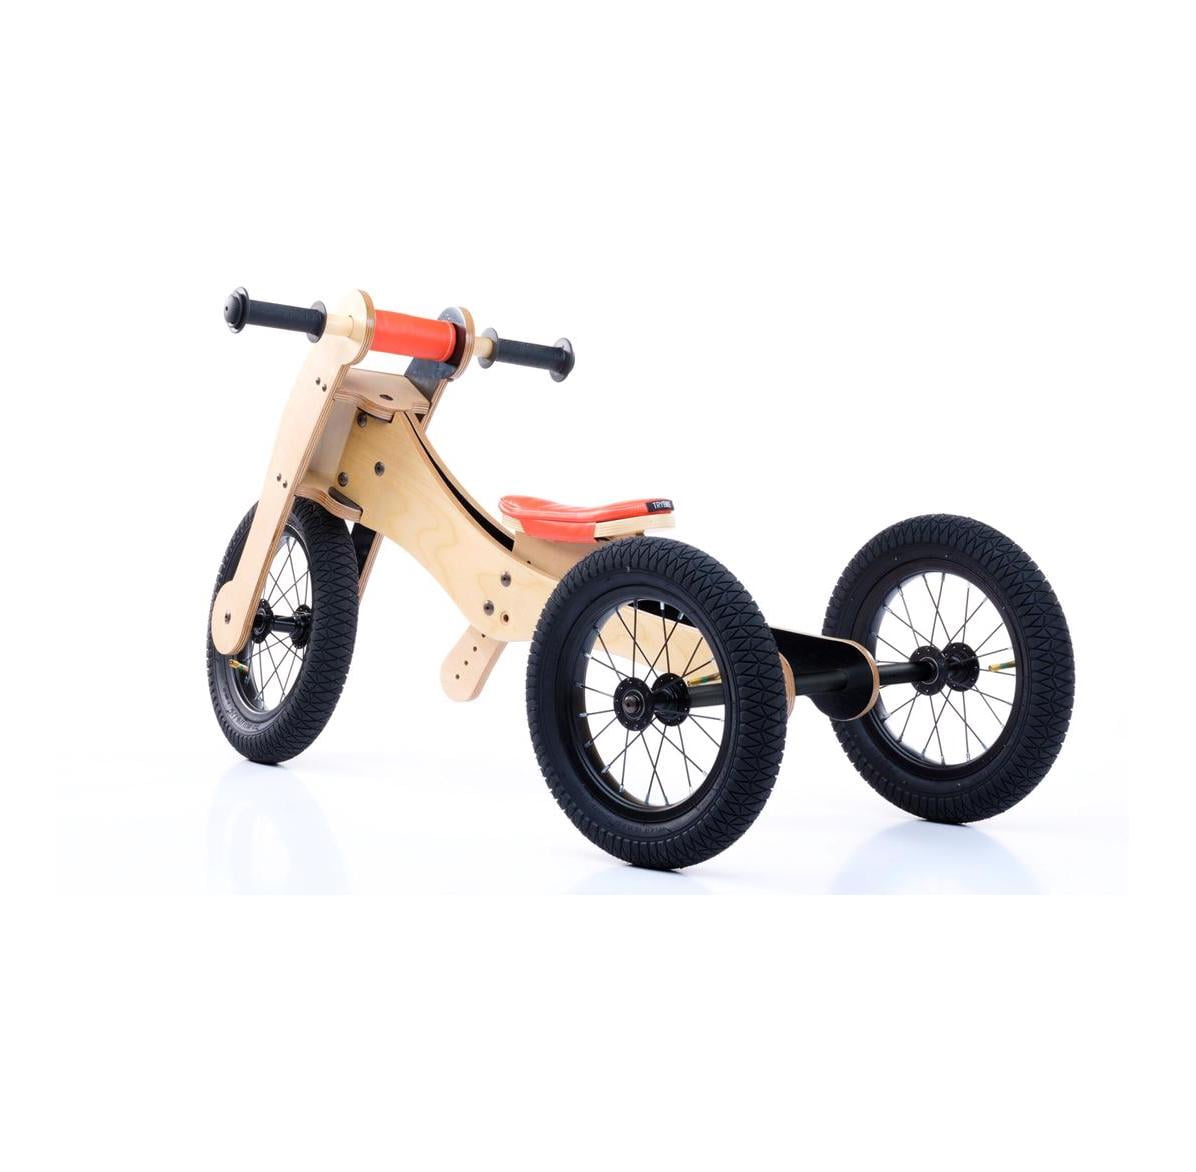 Trybike wooden bike 4 in 1 - Orange seat